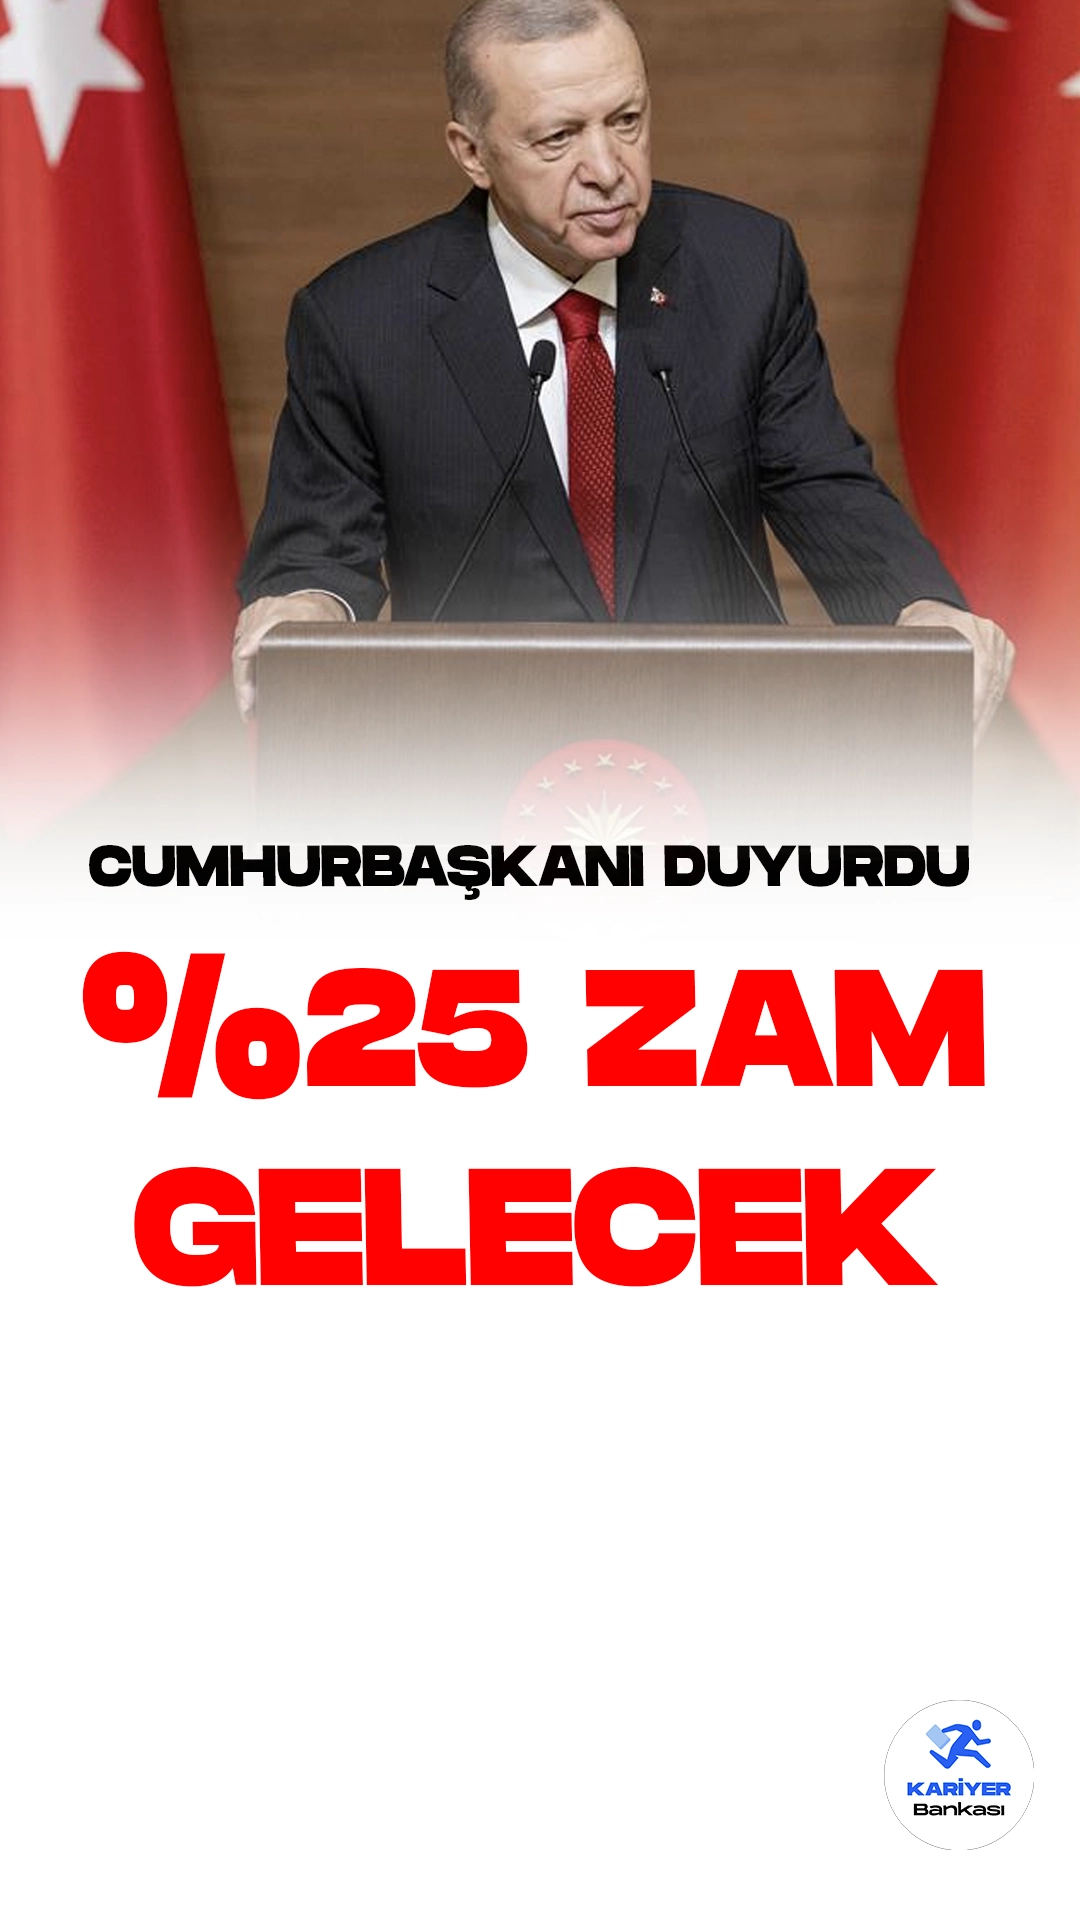 Cumhurbaşkanı Recep Tayyip Erdoğan, "Ücretli öğretmenlerin saatlik ek ders ücretlerinde yüzde 25'lik bir artışa gidilecek" dedi.